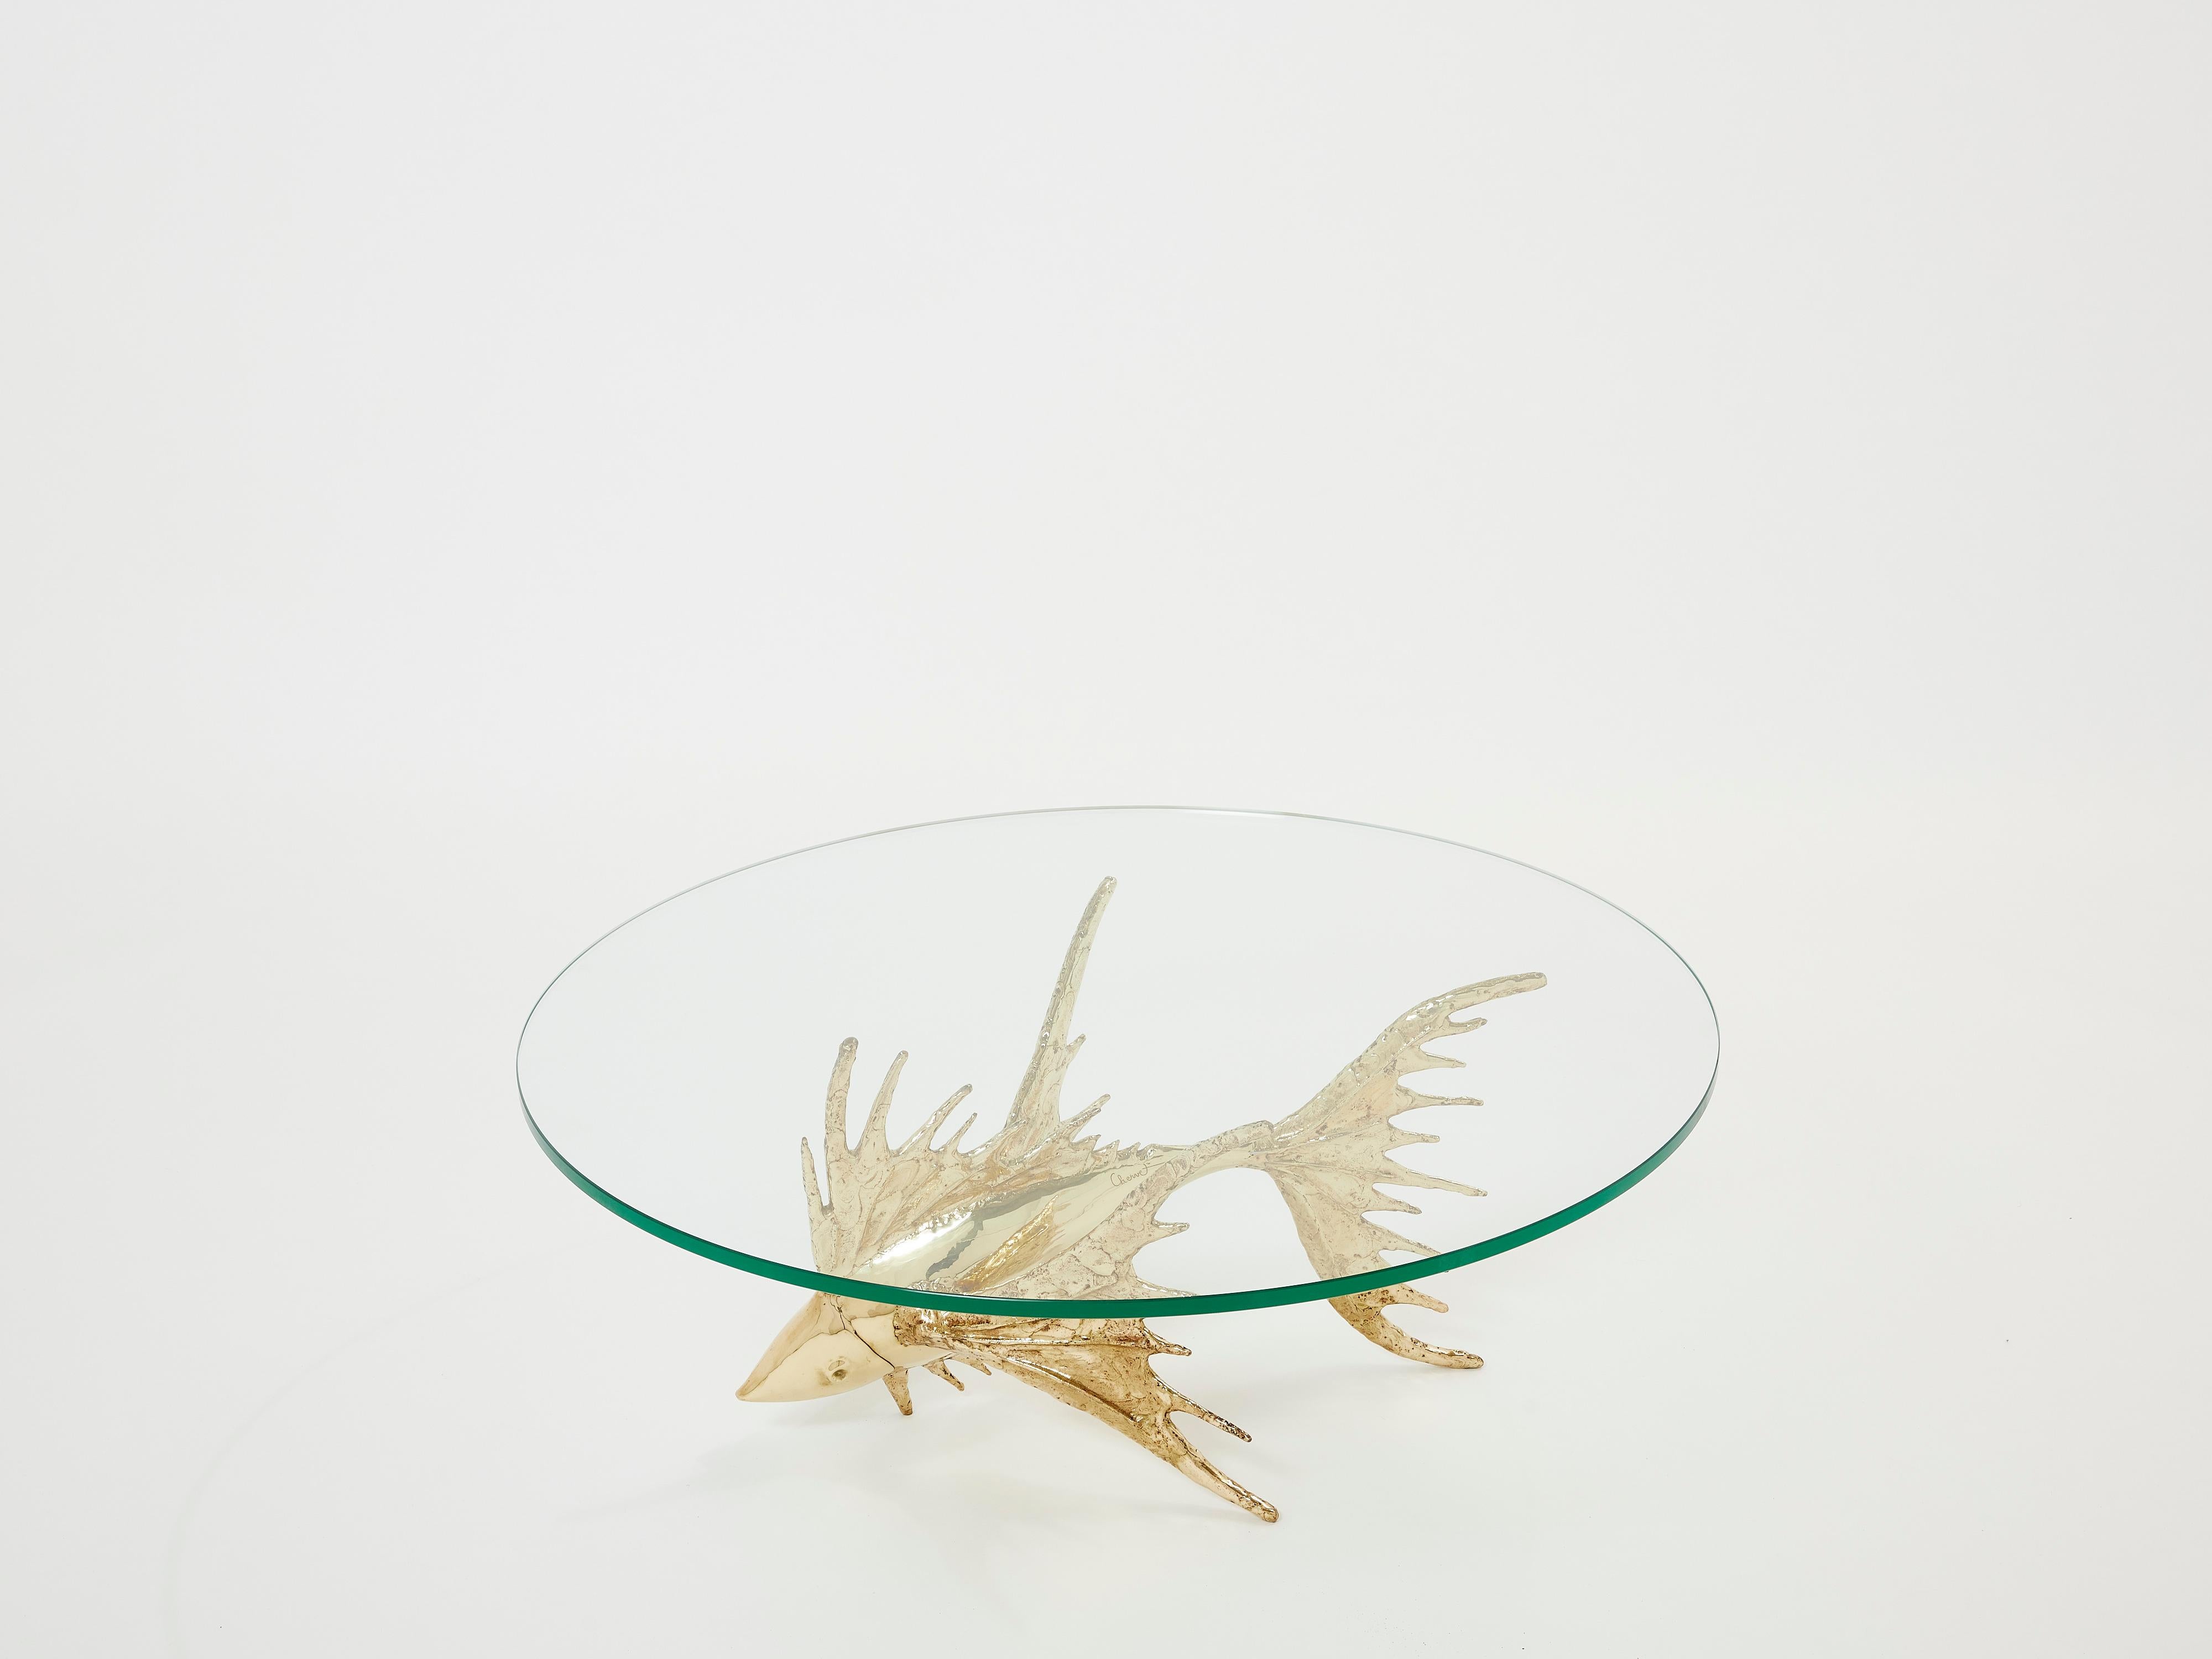 Unique Signed Alain Chervet Brass Fish Sculpture Coffee Table 1977 For Sale 4